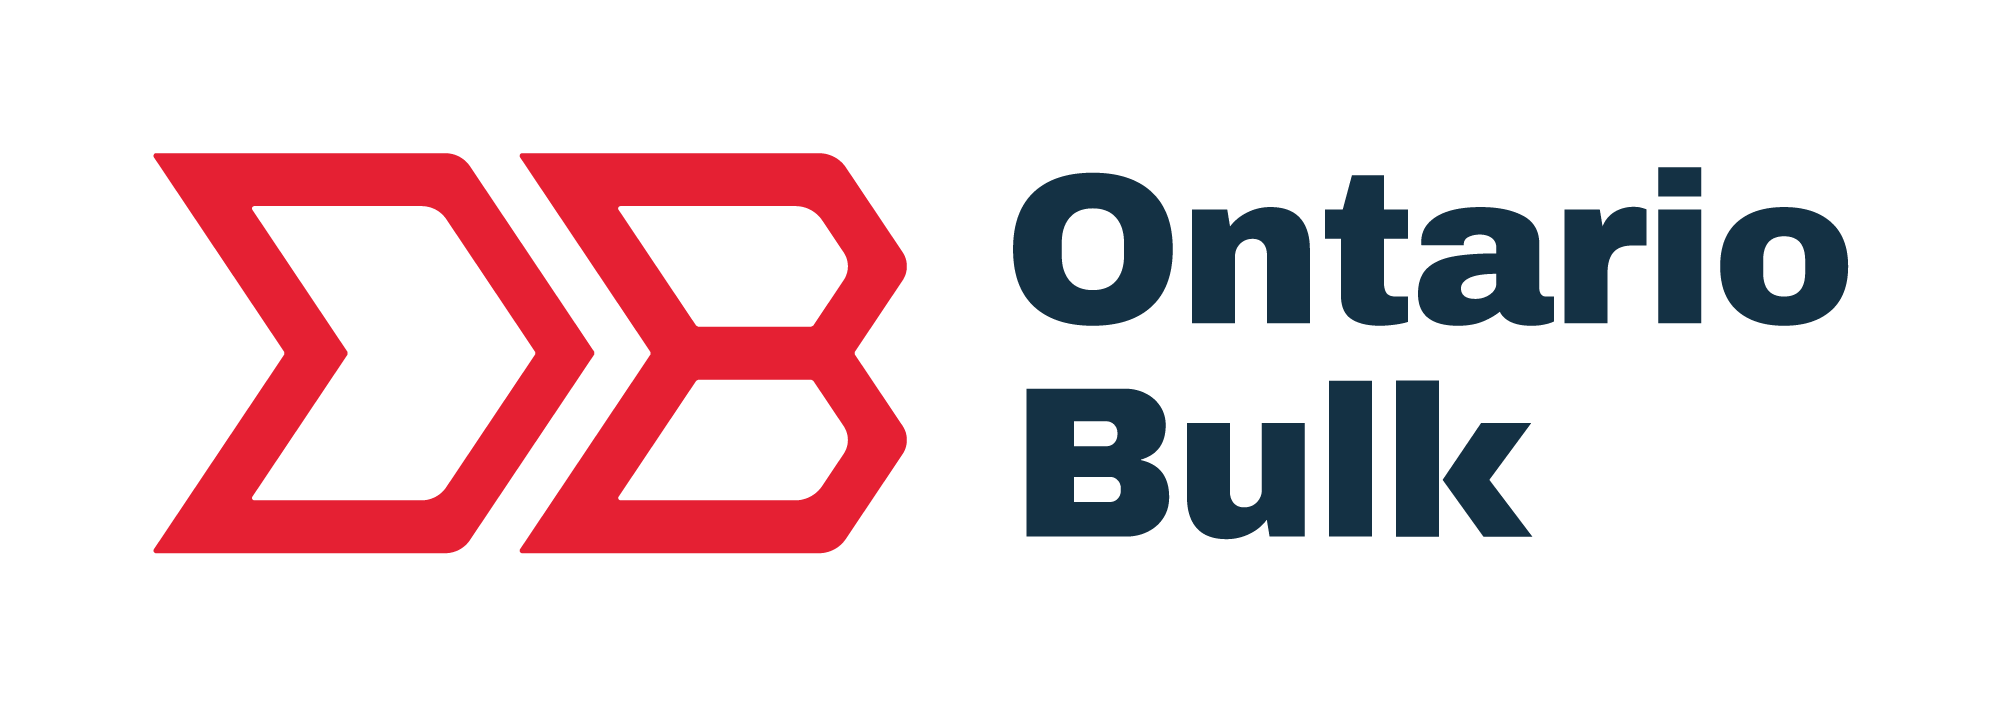 Ontario Bulk